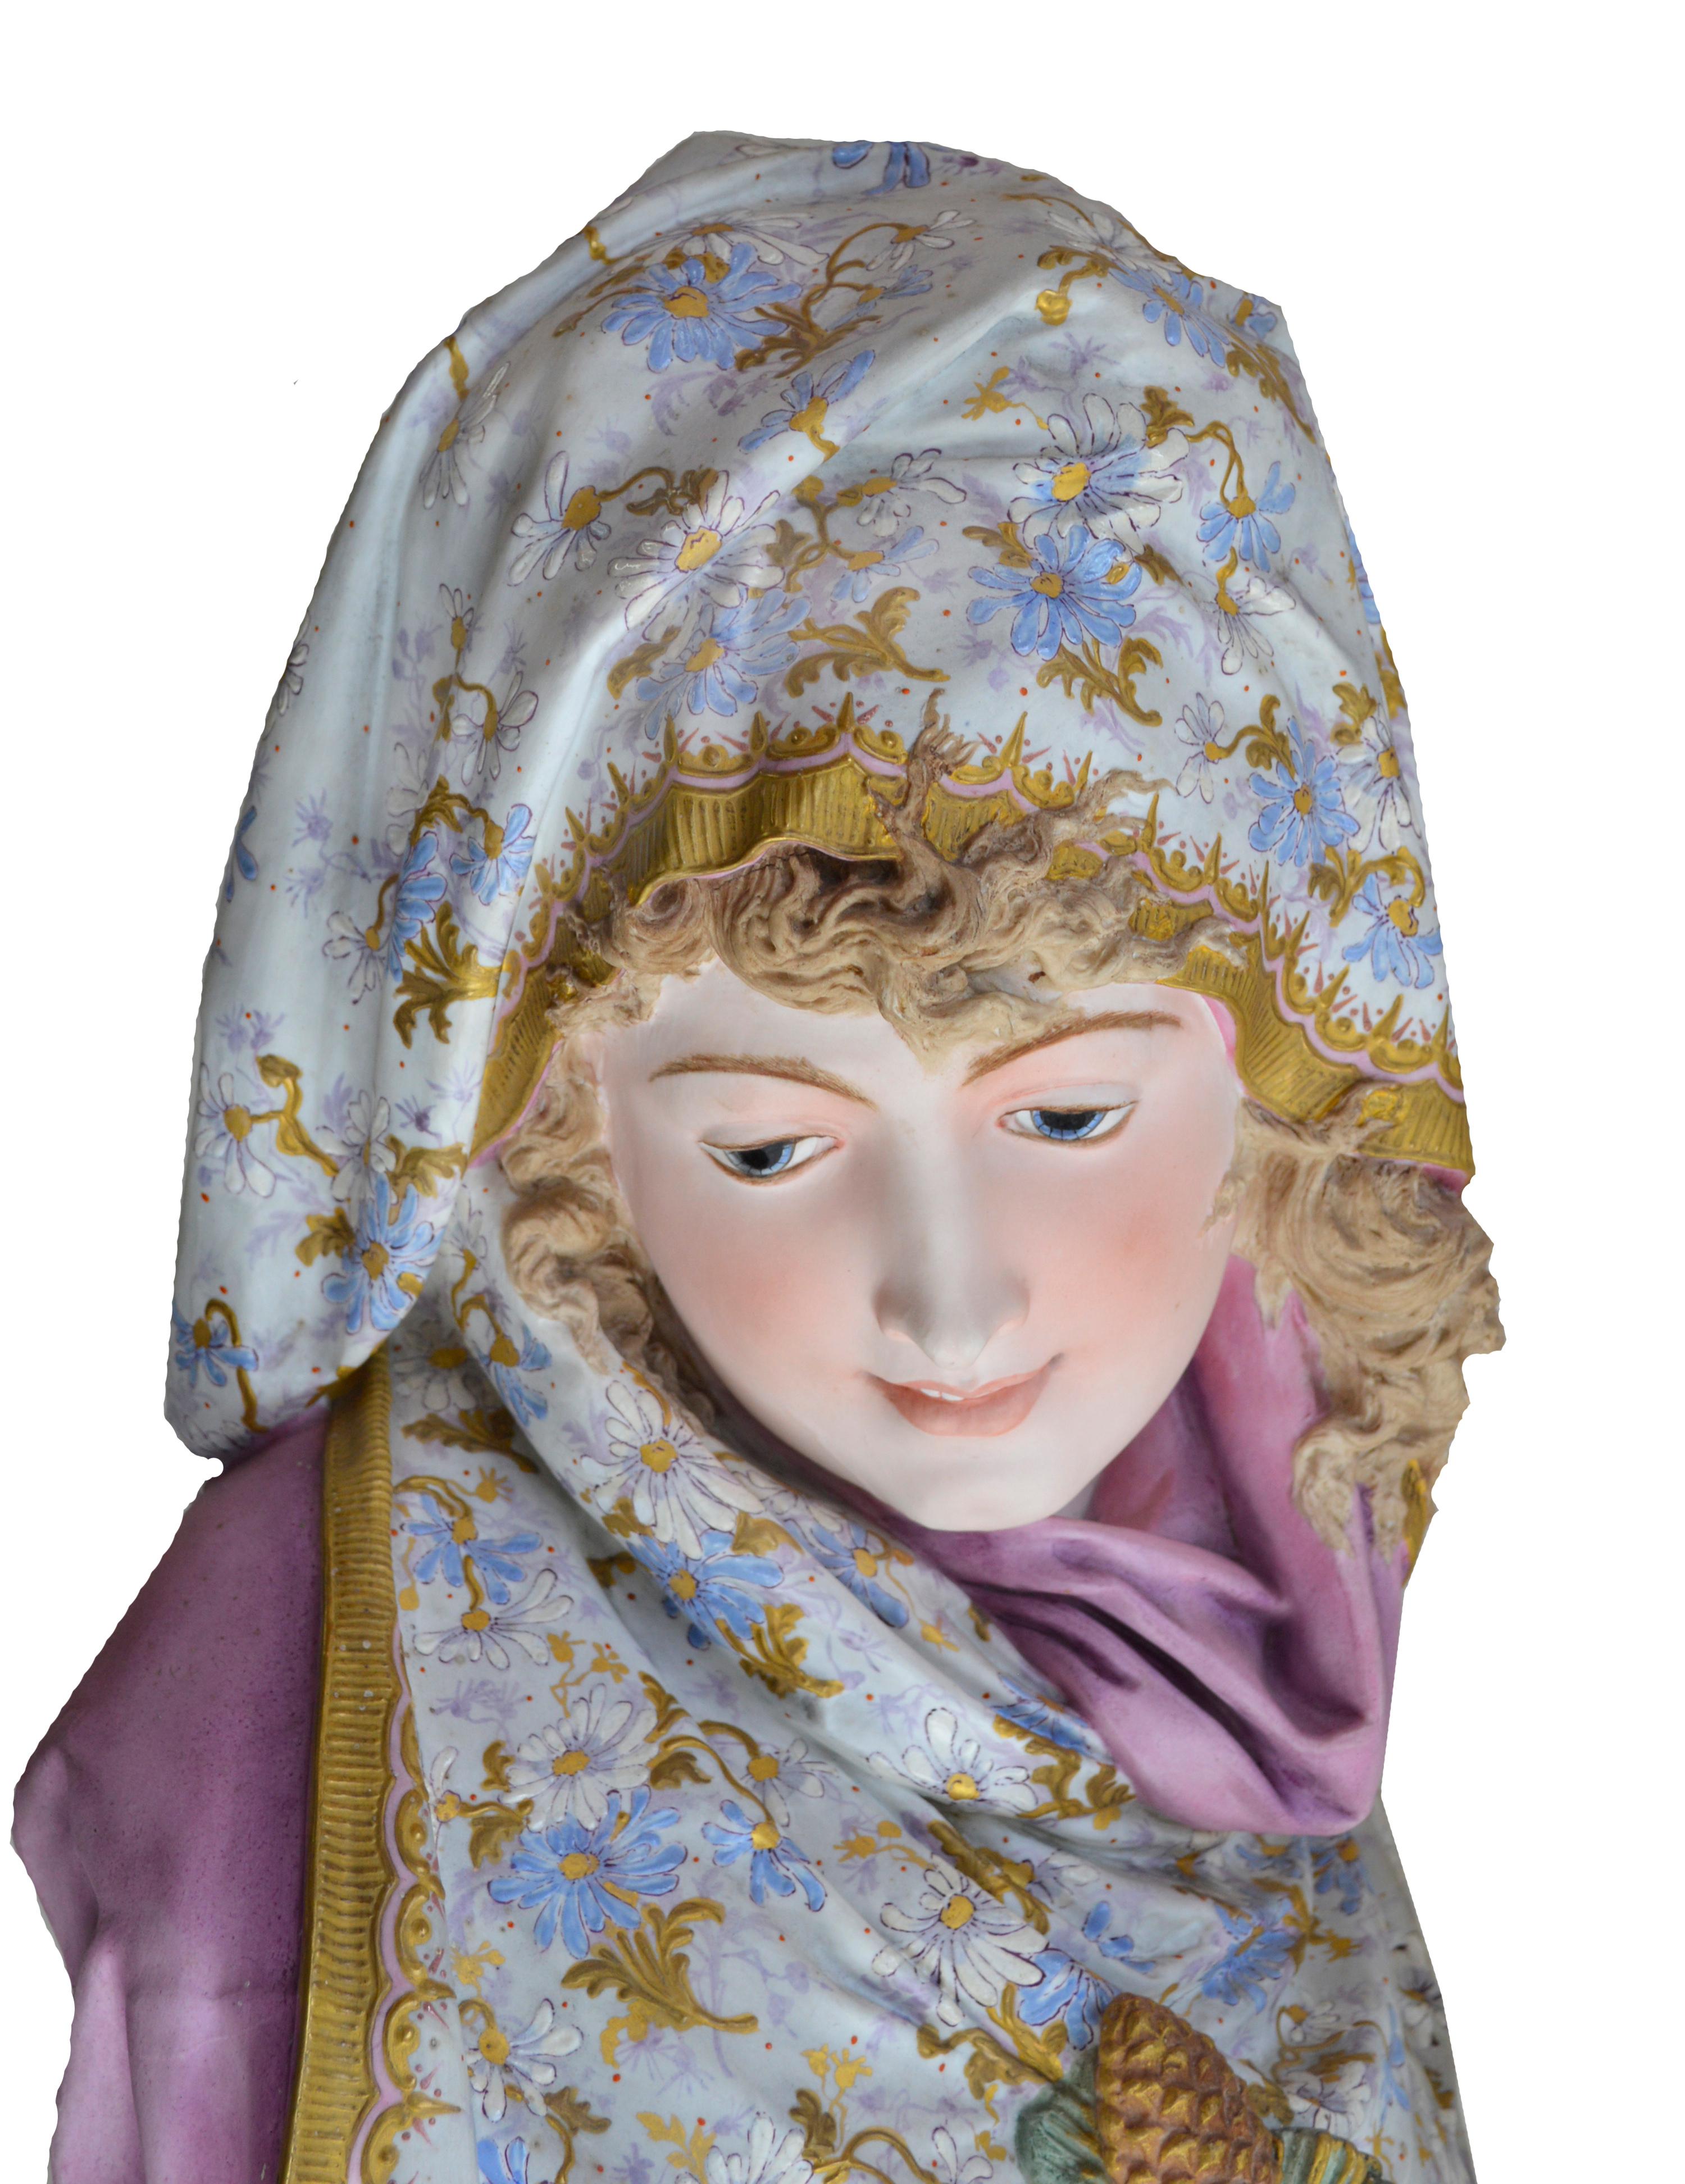 Albert-Ernest Carrier Belleuse Biskuitchrome persische Jungfrau von Albert-Ernest (Ästhetizismus), Sculpture, von Albert-Ernest Carrier-Belleuse